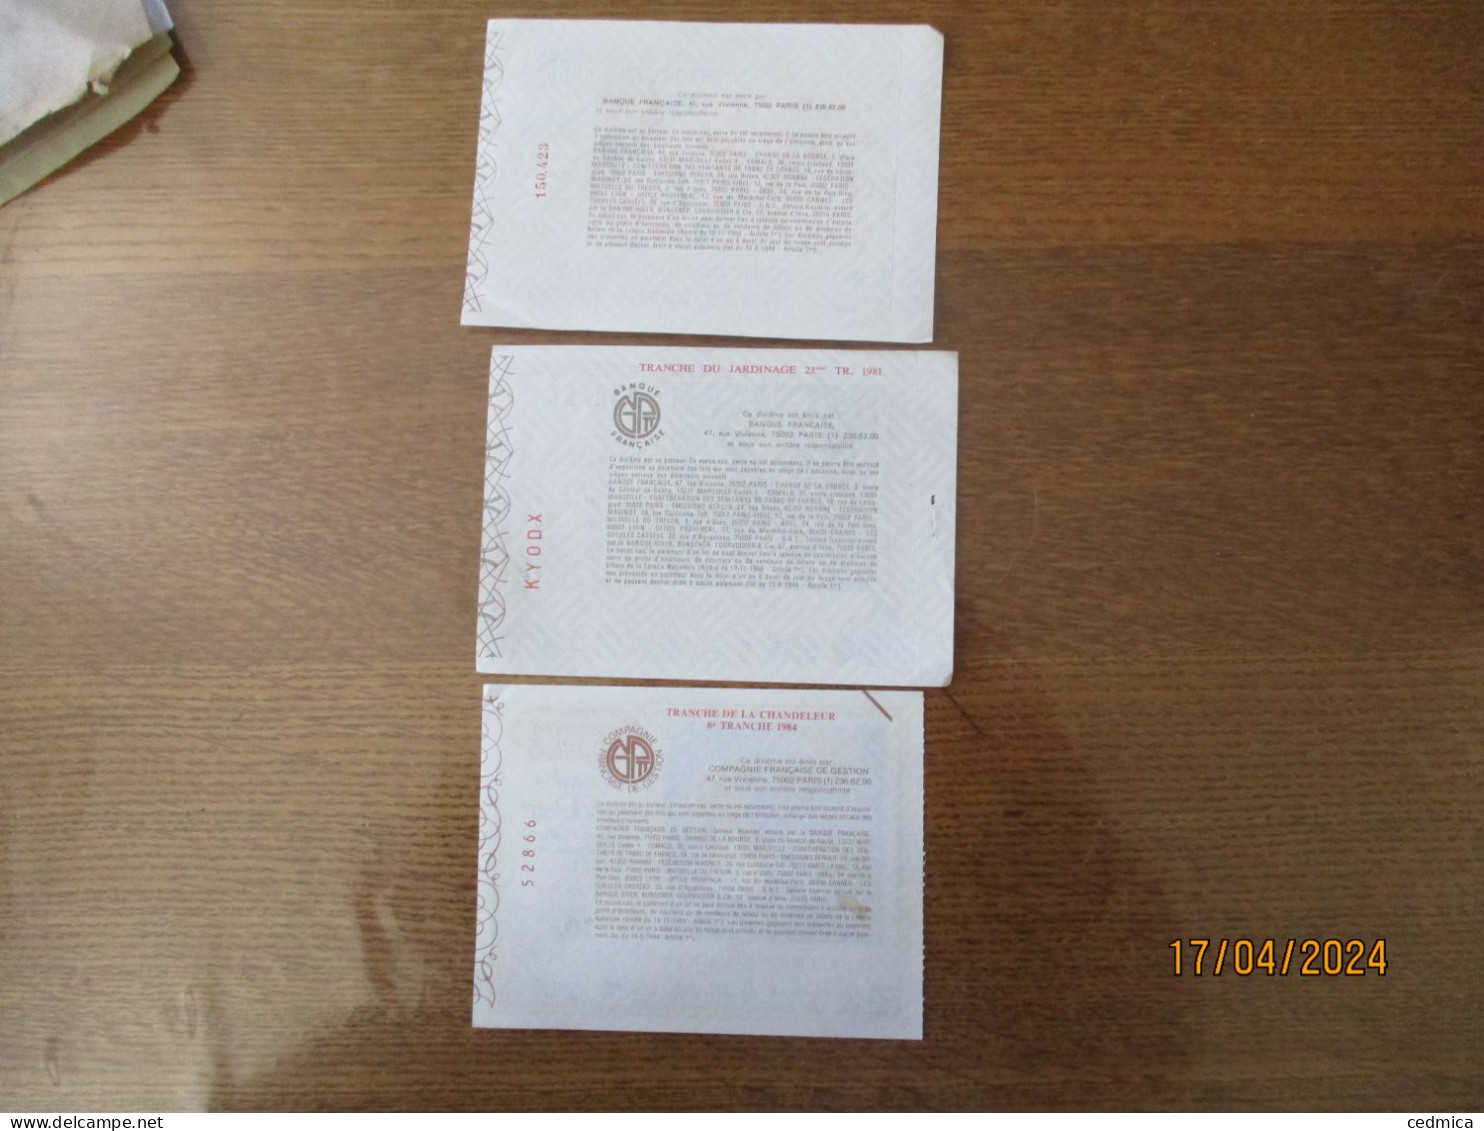 3 BILLETS DE LOTERIE TRANCHE DE L'ARLEQUIN OCTOBRE 1980,DU JARDINAGE 1er AVRIL 1981,DE LA CHANDELEUR 1er FEVRIER 1984 - Biglietti Della Lotteria